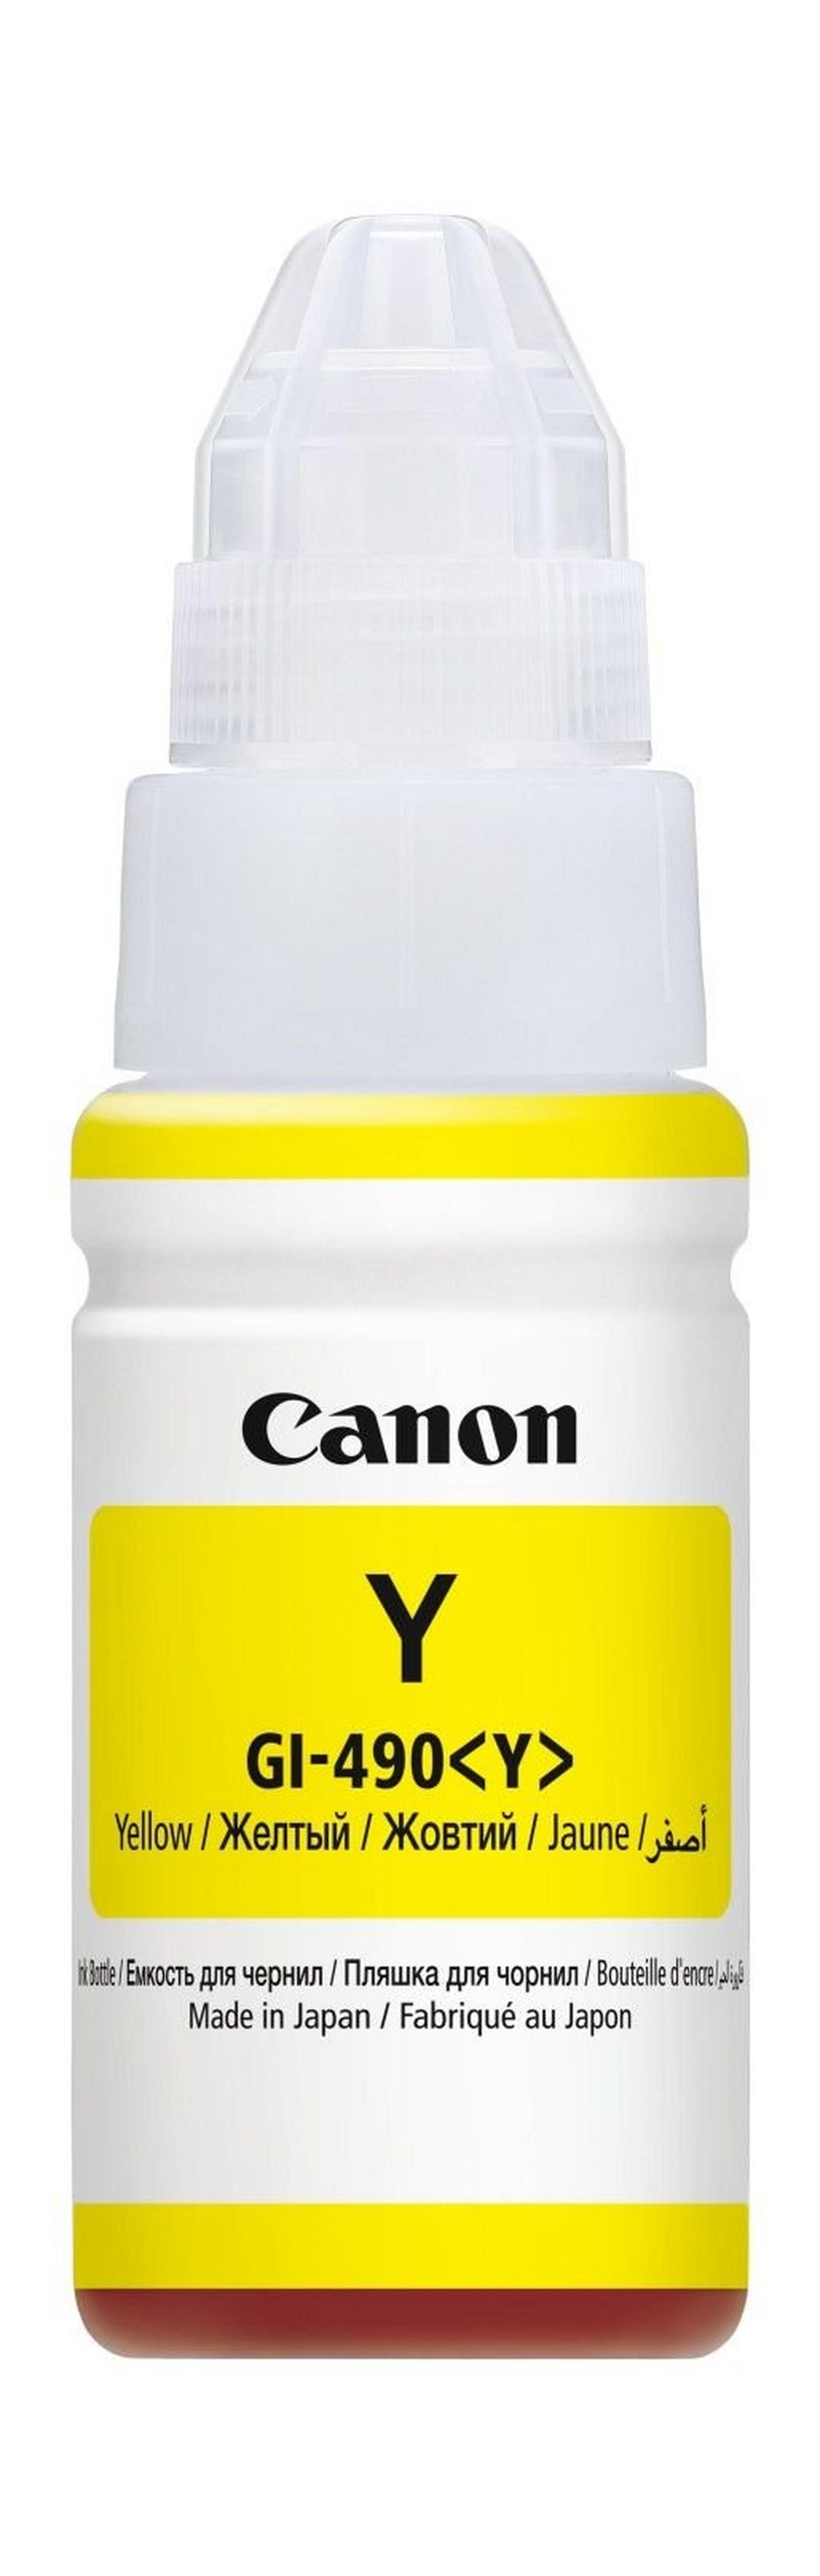 Canon GI-490 70ml Ink Bottle For Inkjet Printing (0666C001AA)- Yellow